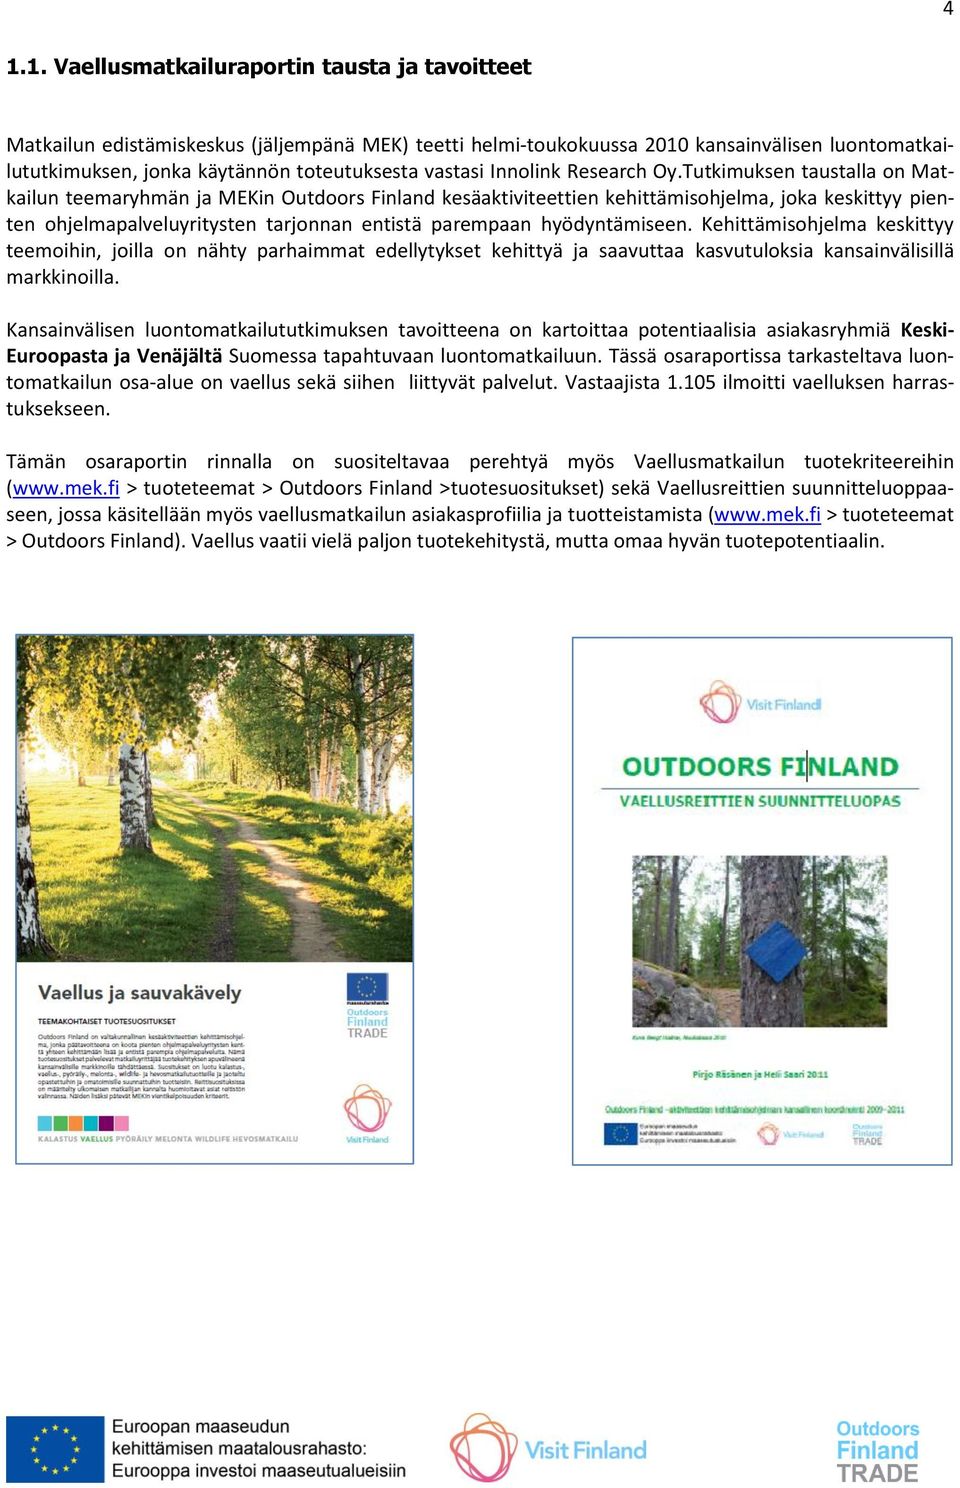 Tutkimuksen taustalla on Matkailun teemaryhmän ja MEKin Outdoors Finland kesäaktiviteettien kehittämisohjelma, joka keskittyy pienten ohjelmapalveluyritysten tarjonnan entistä parempaan